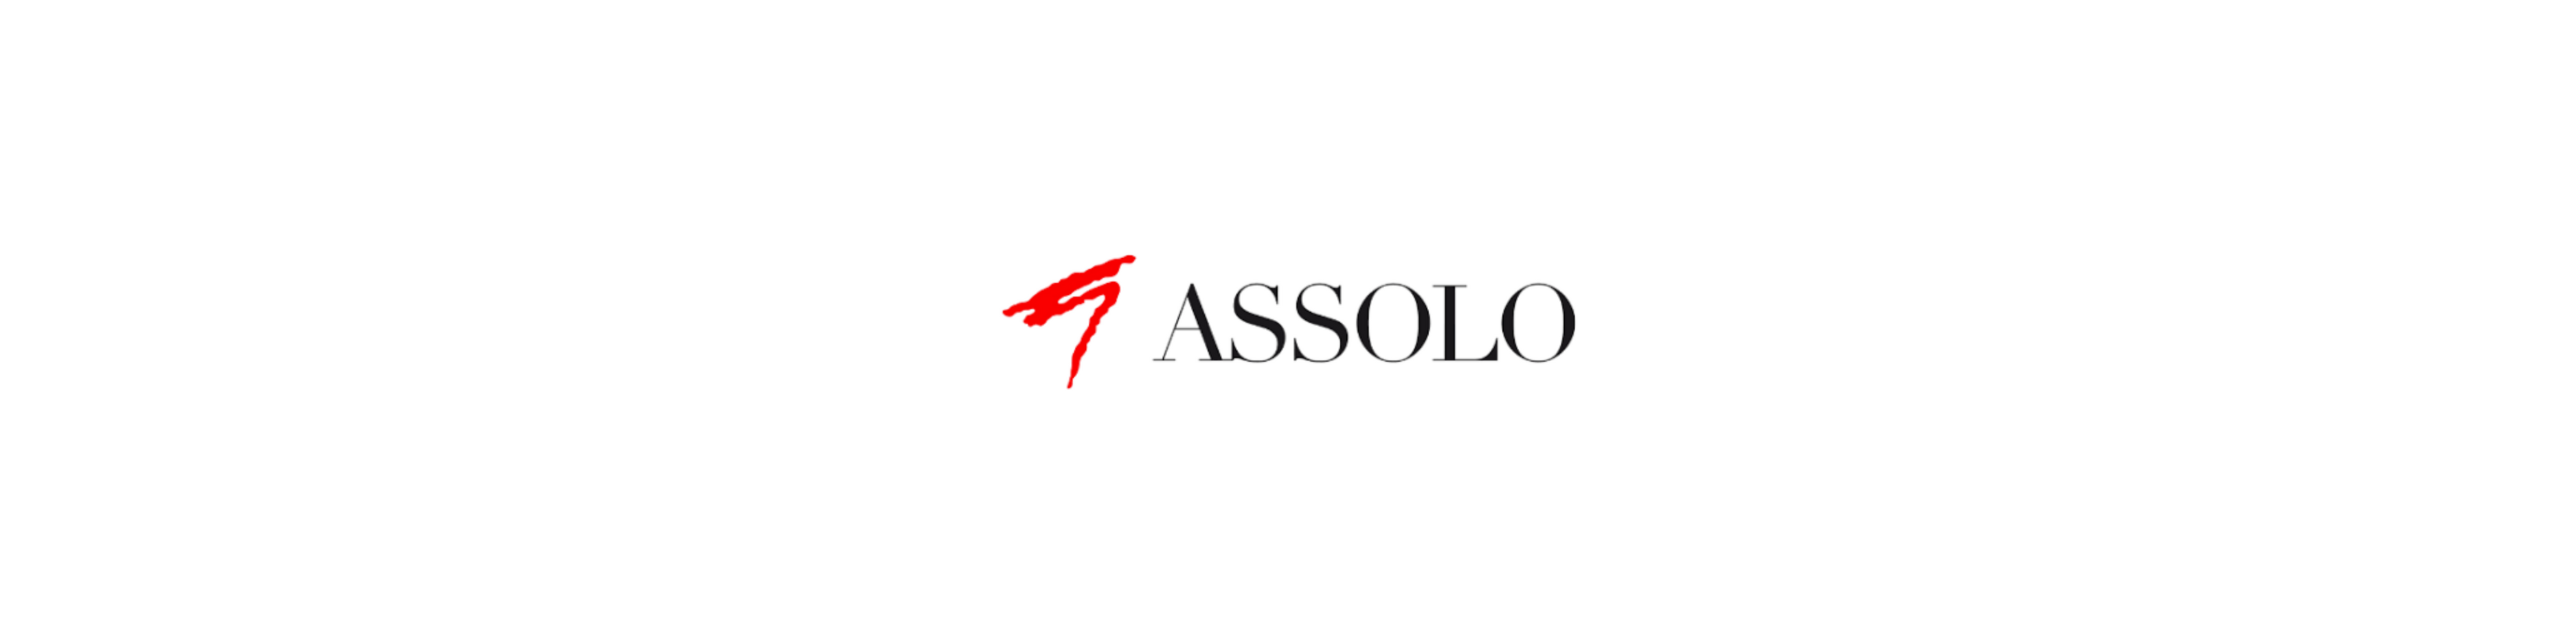 Assolo Faschion (In promozione)